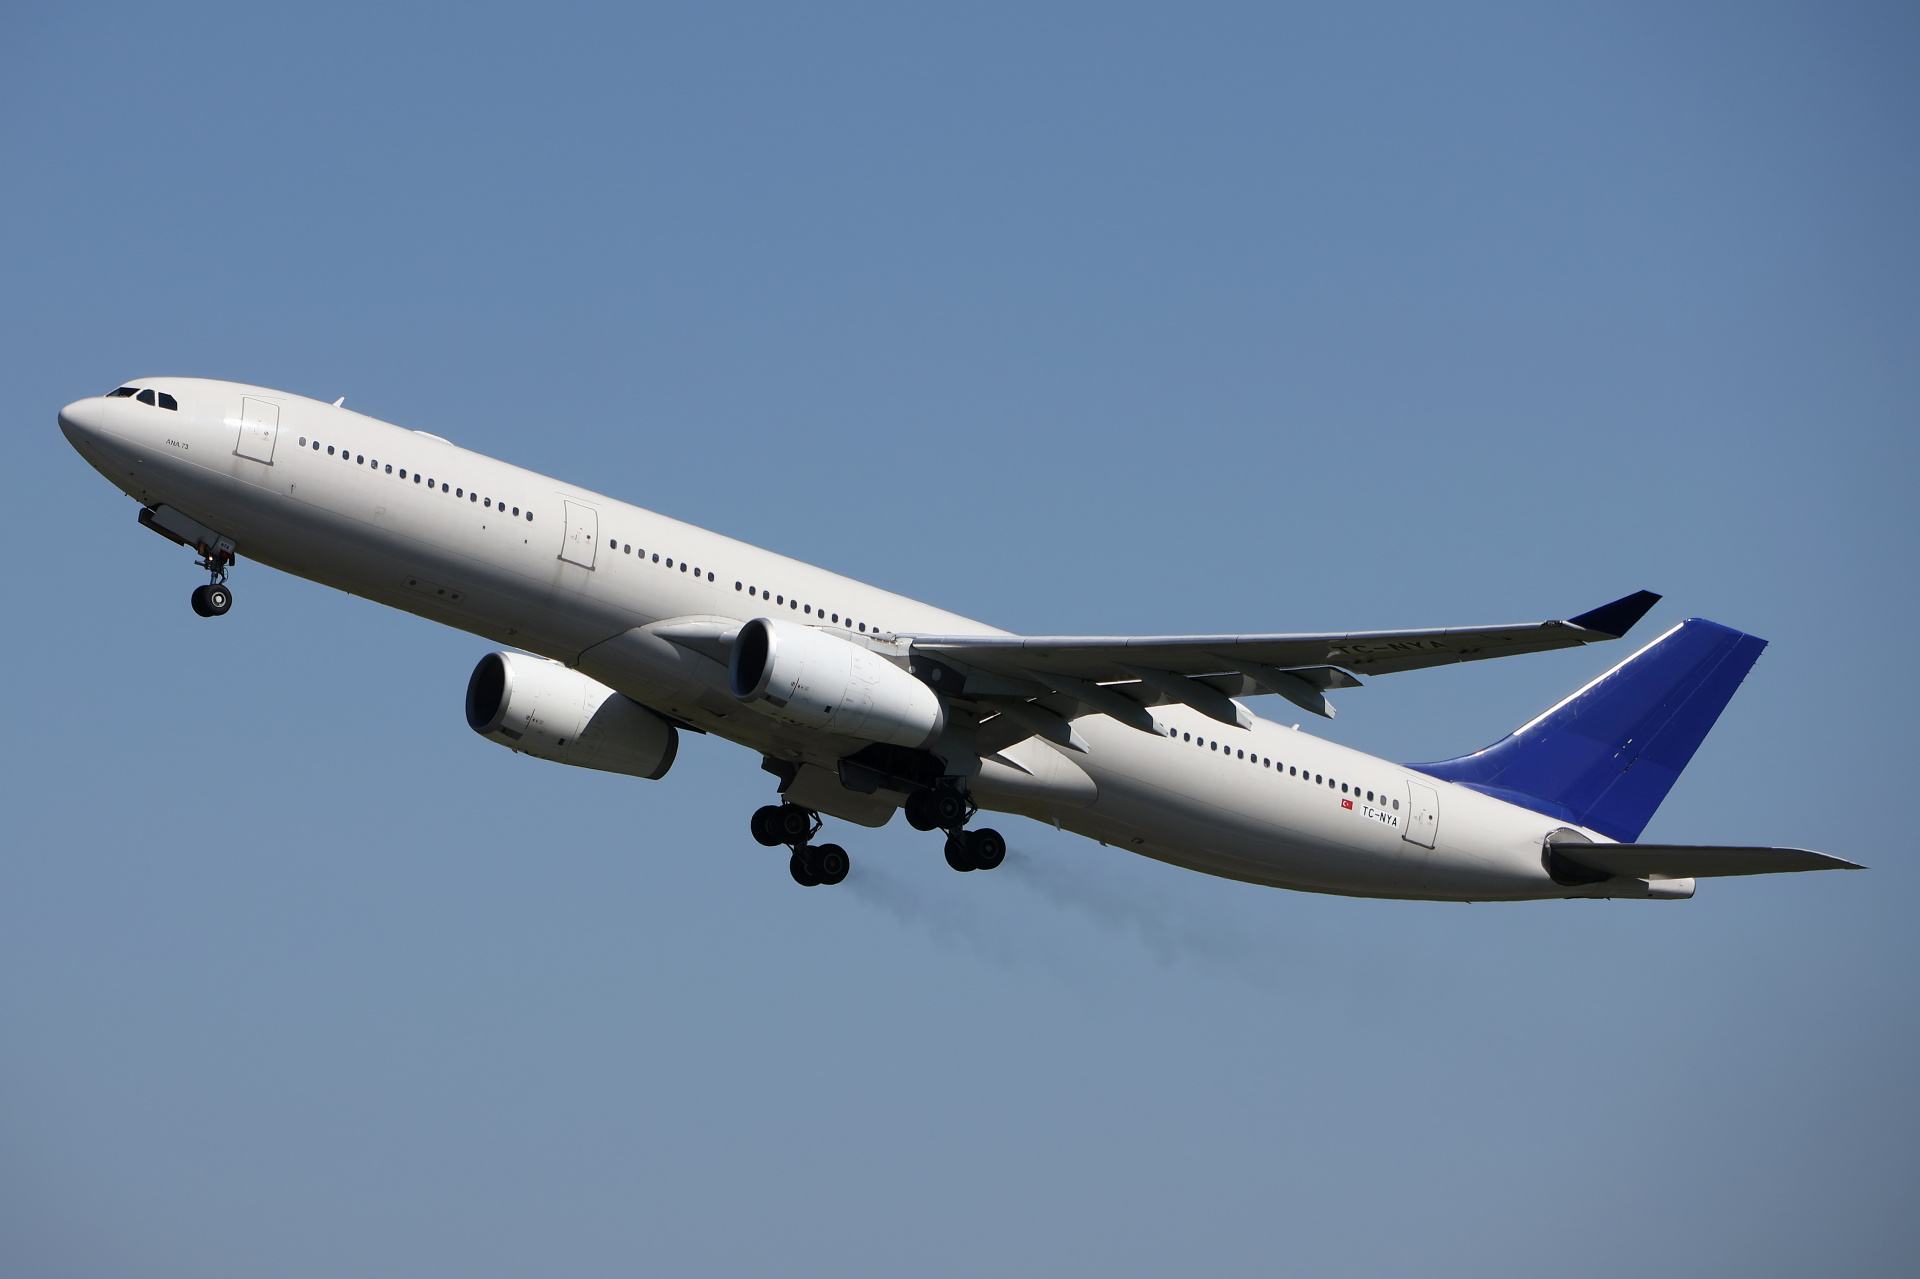 TC-NYA, Air Anka (Aircraft » EPWA Spotting » Airbus A330-300)